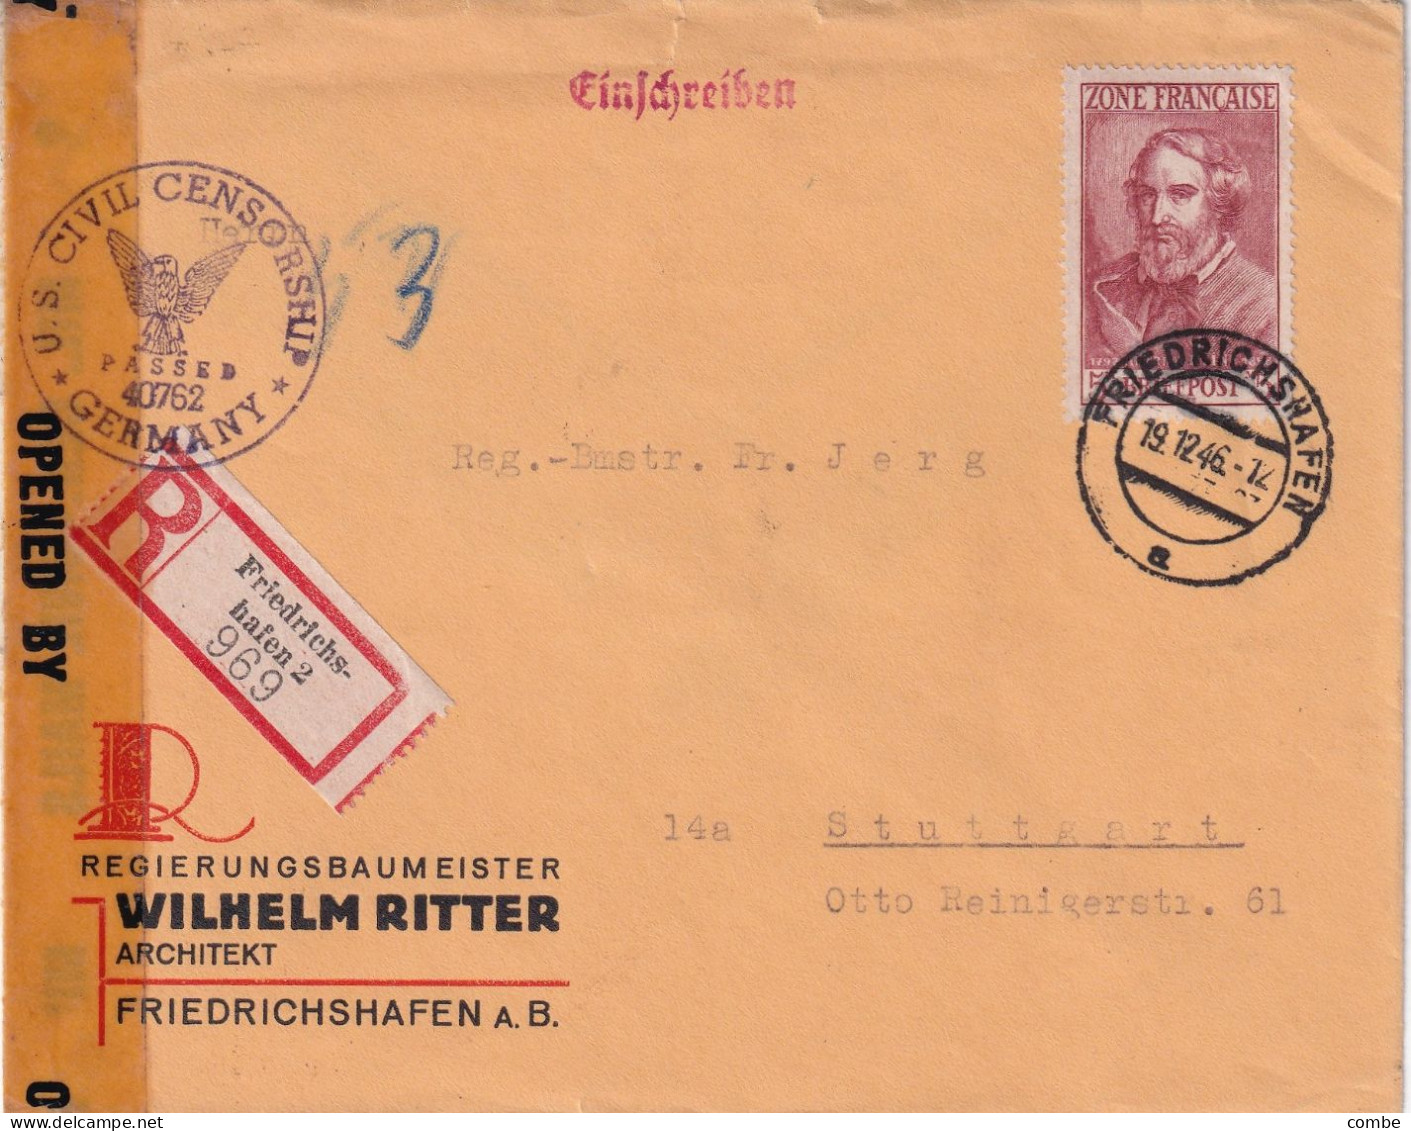 LETTRE. 1946. RECOMMANDE WILHELM RITTER FRIEDRISCHSHAFEN. Mi 13 EF. SEUL POUR STUTTGARDT. OPEBN BY MIL.CEN.CIVIL MAILS - Emisiones Generales